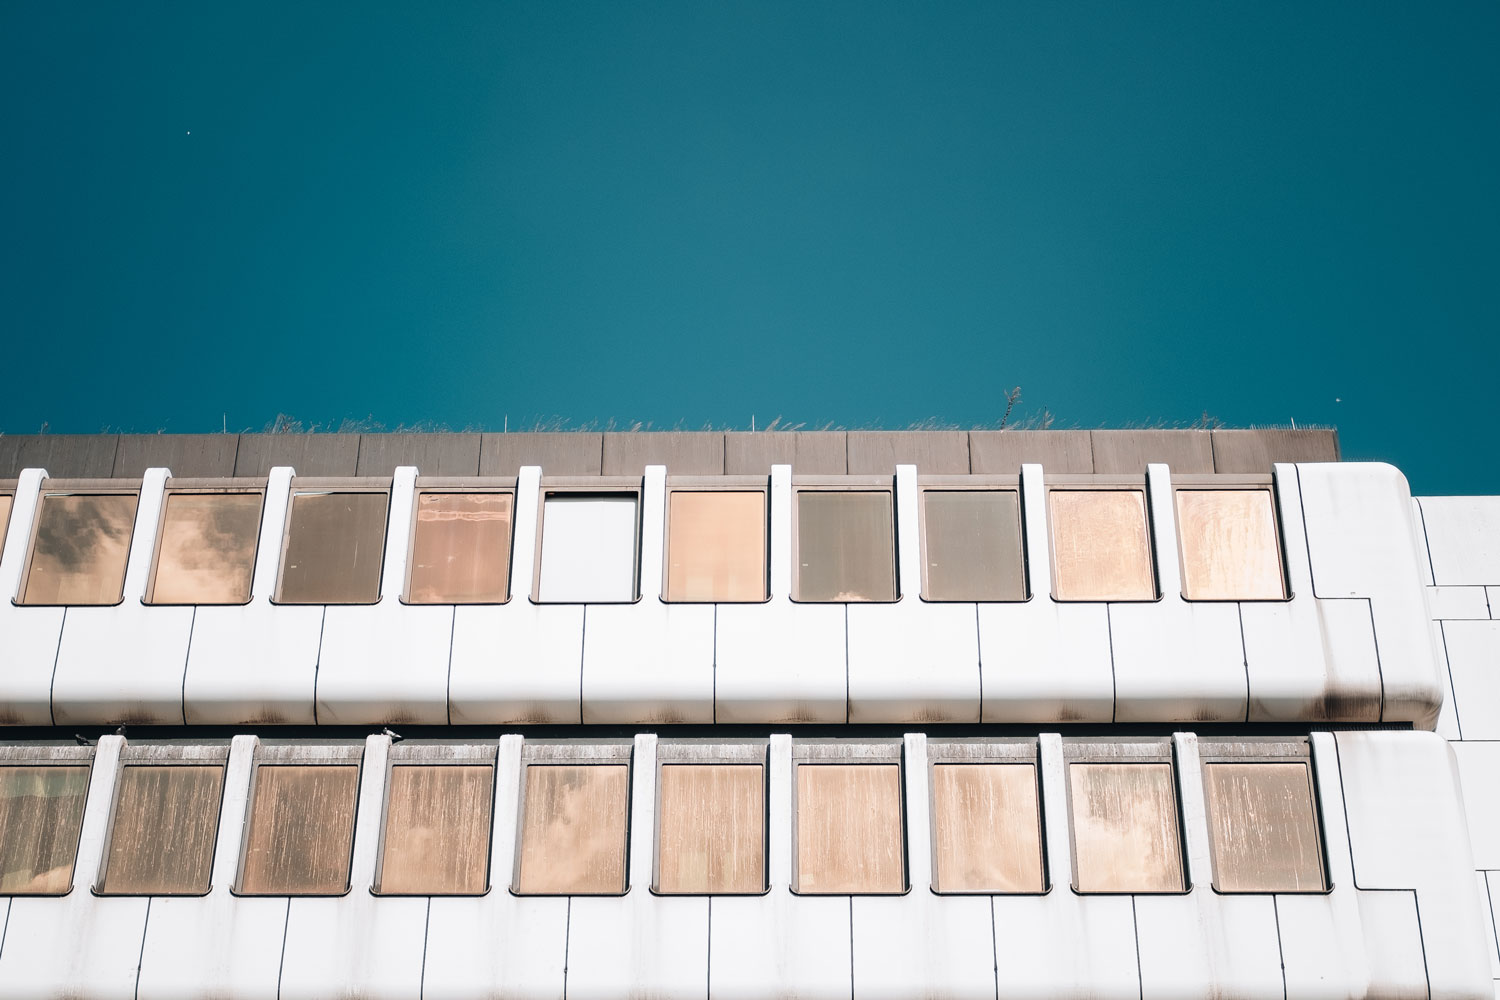 {:gb}Facade of a white building, the windows of which are mirrored in copper color.{:}{:de}Fassade eines weißen Gebäudes, dessen Fenster kupferfarben verspiegelt sind.{:}